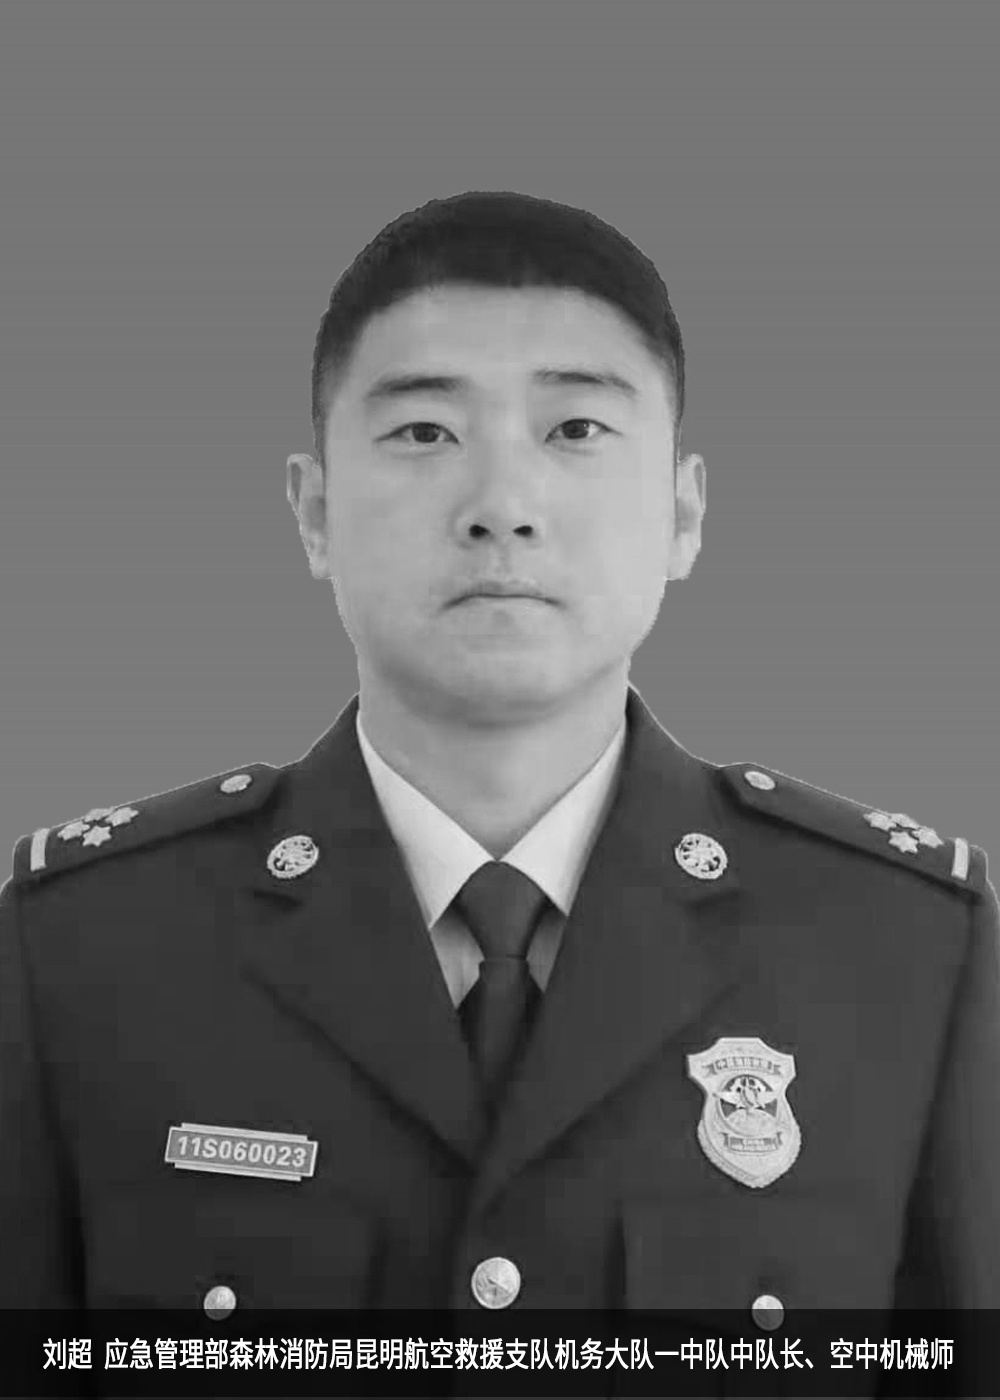  牺牲的机组人员刘超来源：应急管理部森林消防局官方微博